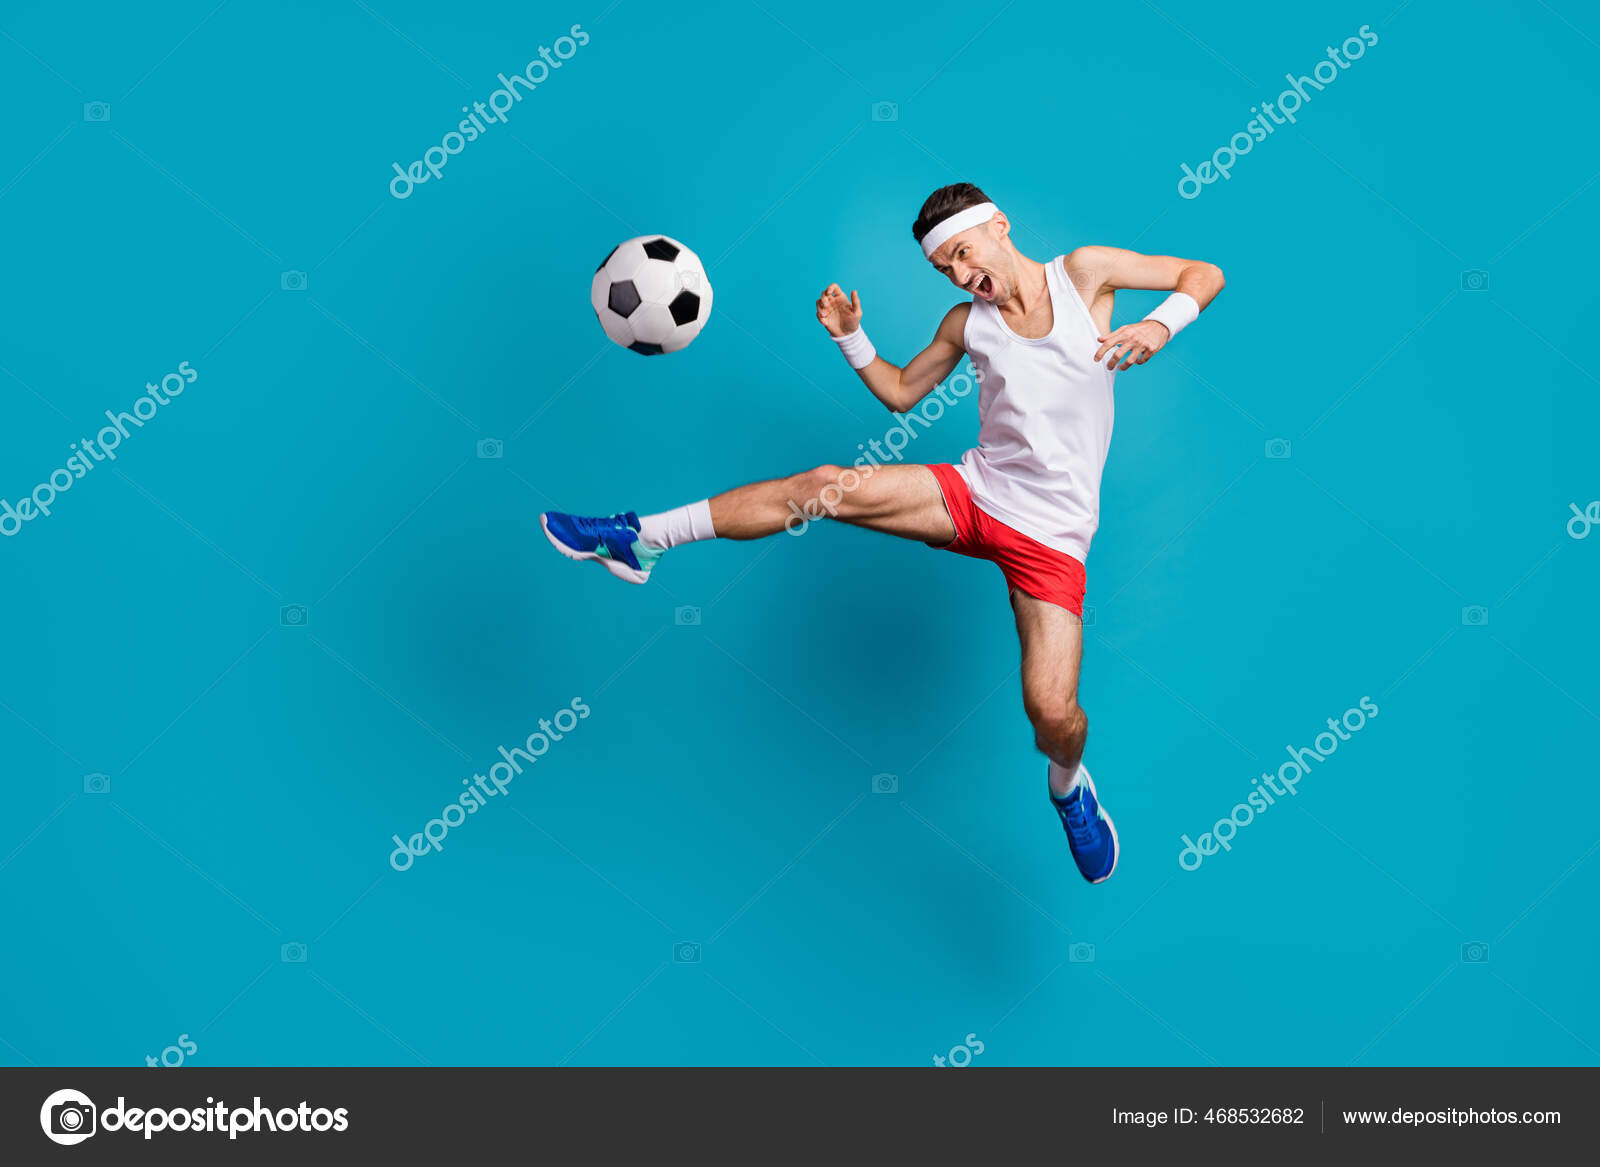 Jogador de futebol forte com bola de futebol no fundo branco isolado